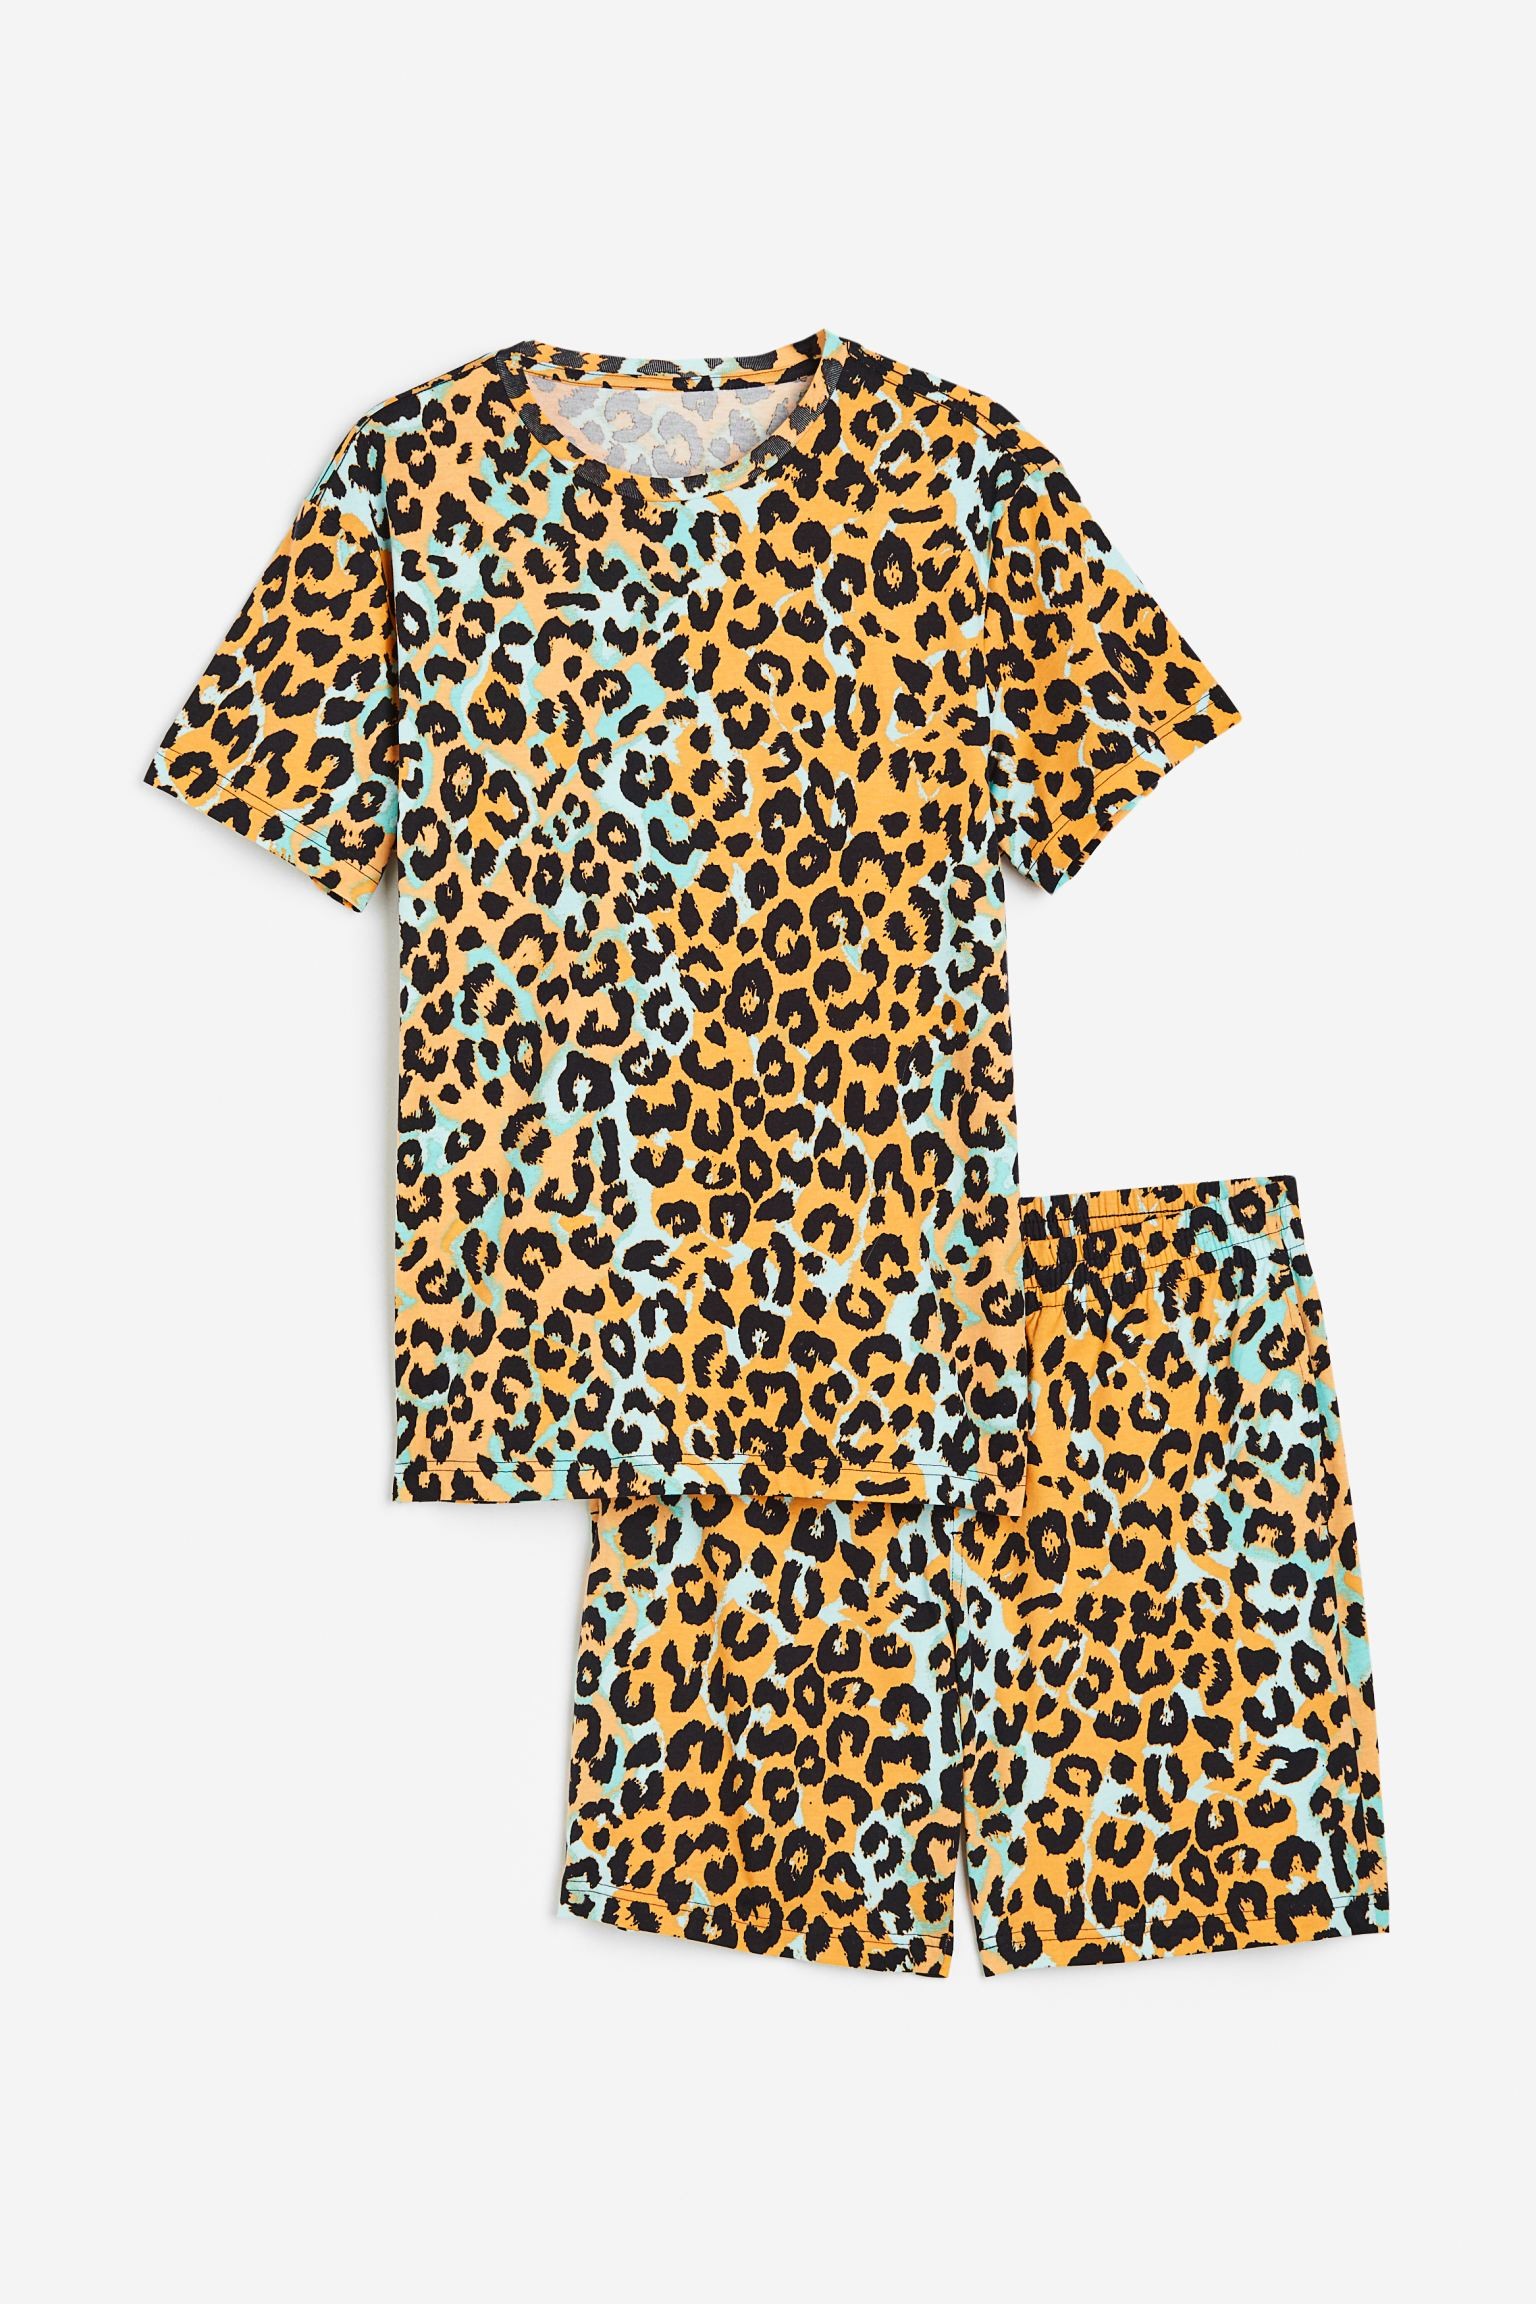 Пижама с футболкой и шортами обычного кроя, Бежевый/Леопардовый принт, Разные размеры